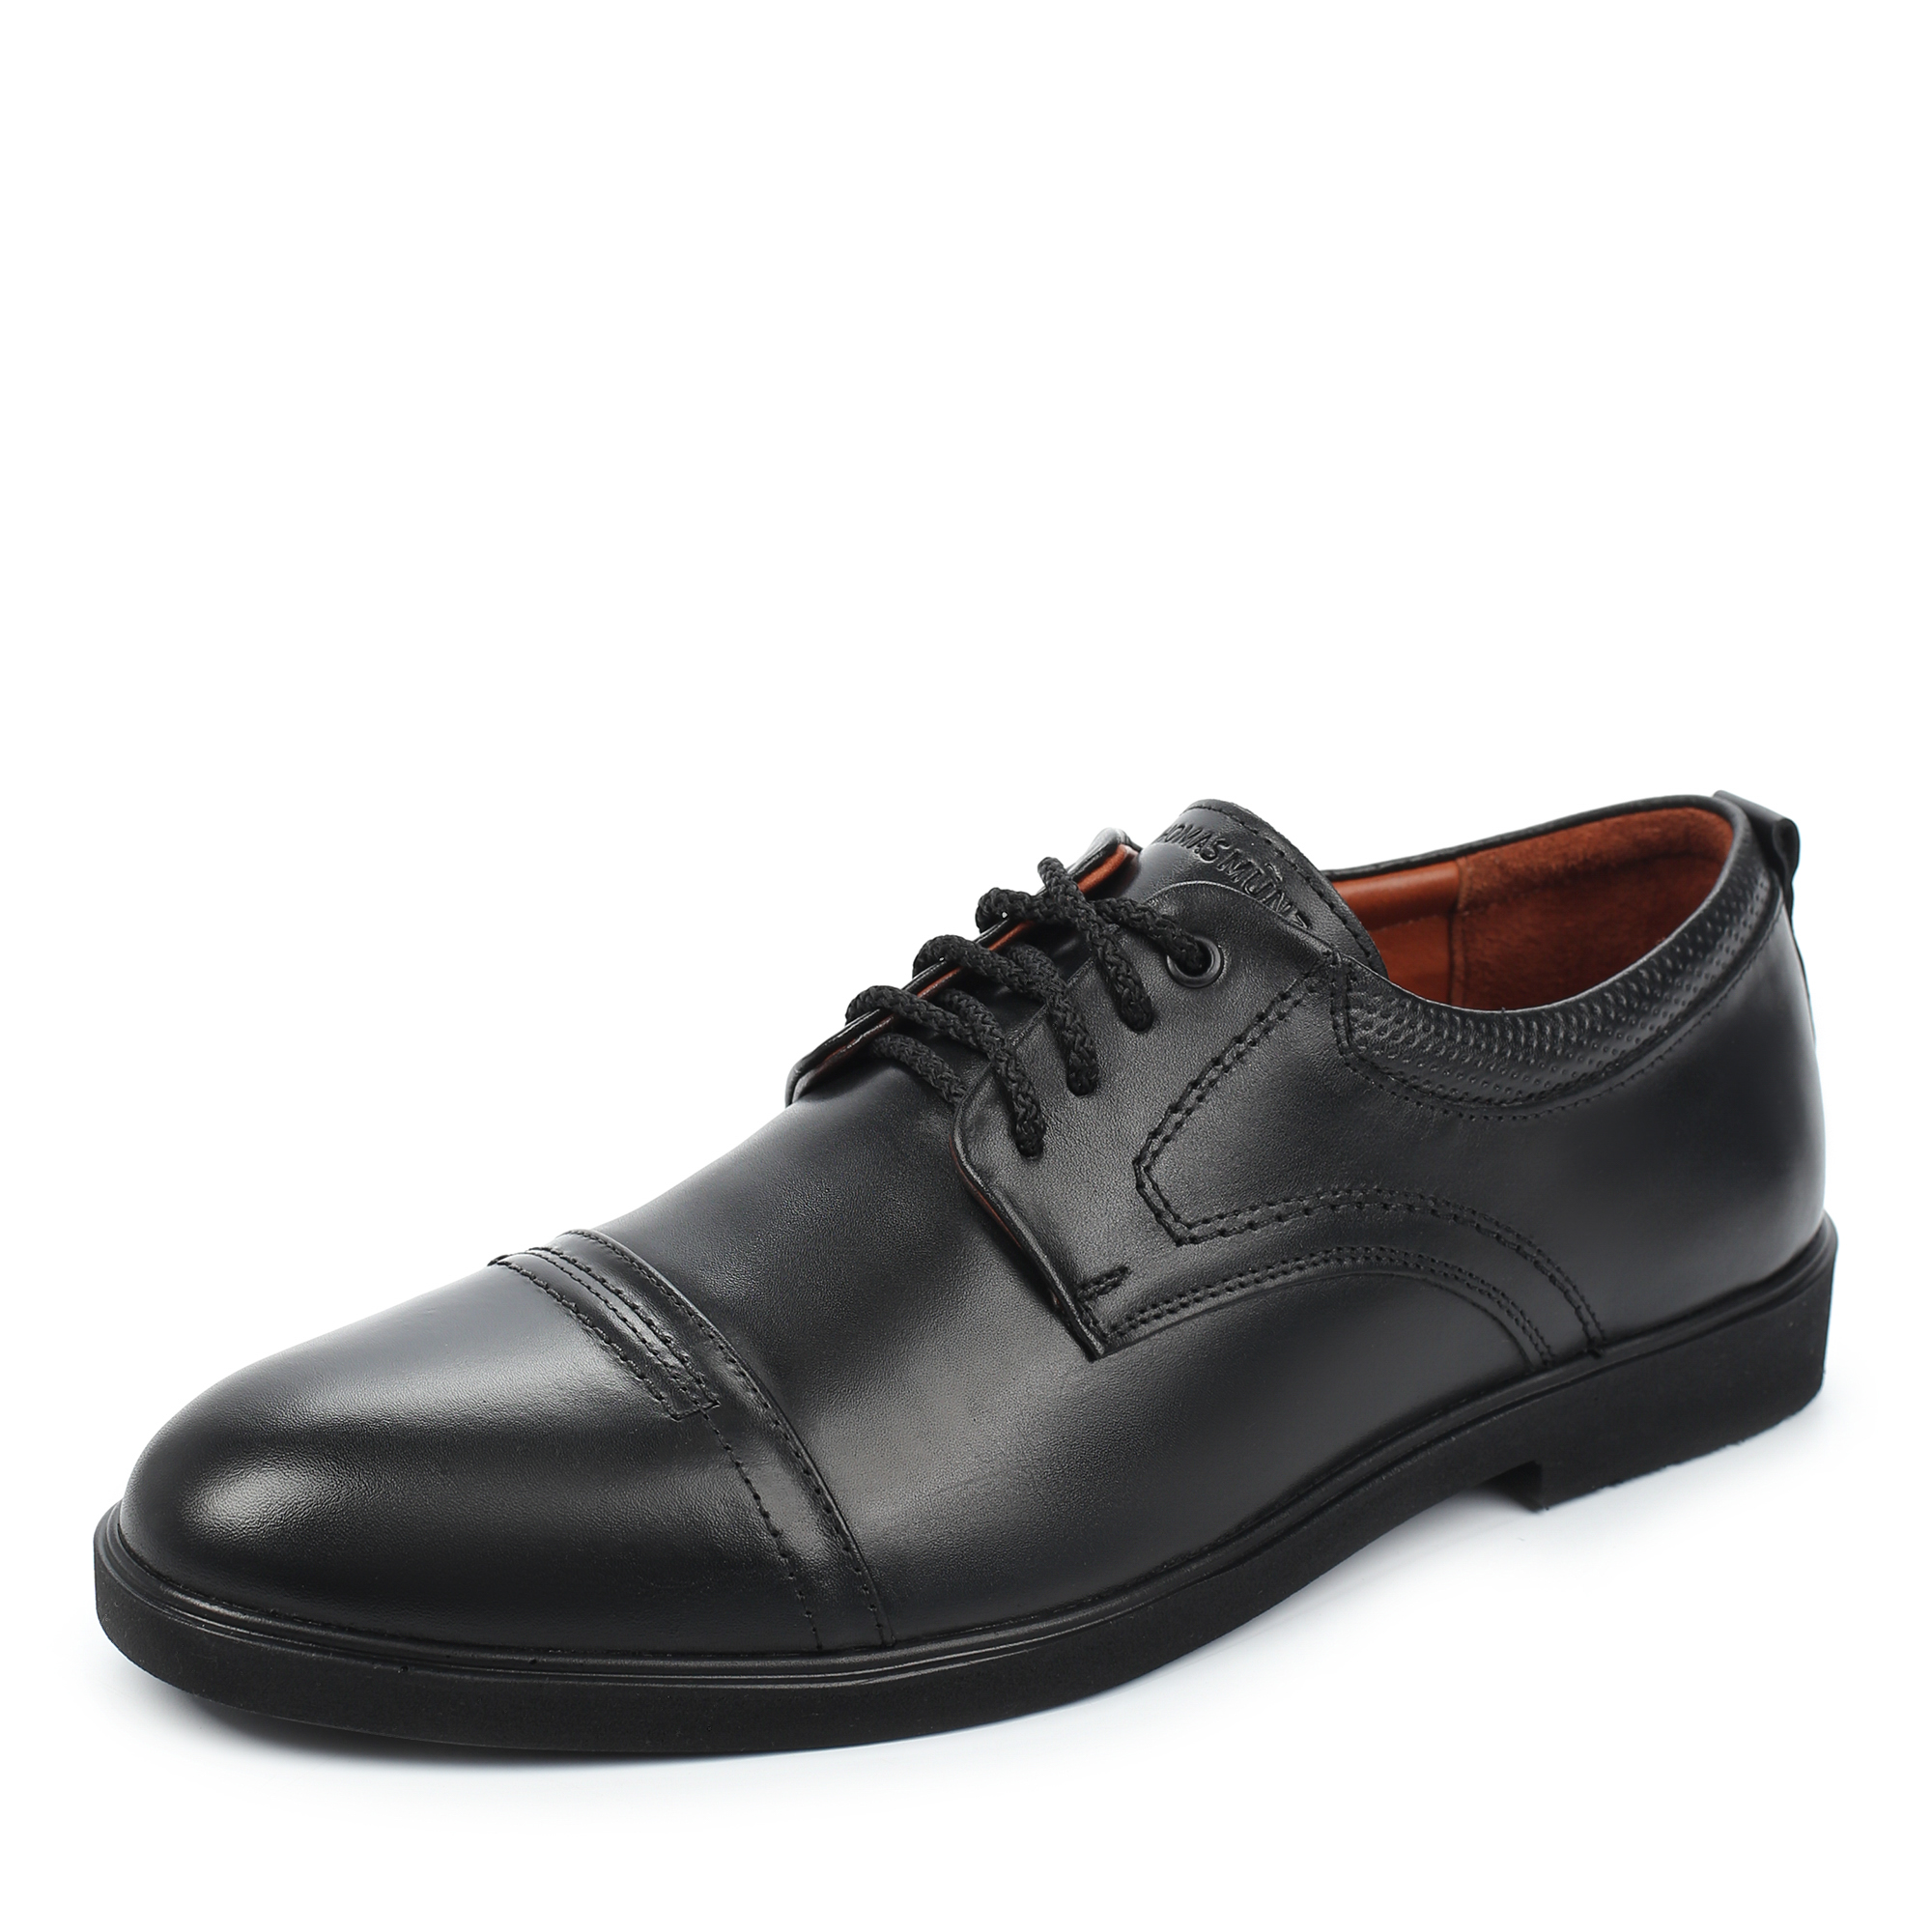 Туфли/полуботинки Thomas Munz 306-013A-1102, цвет черный, размер 42 - фото 2